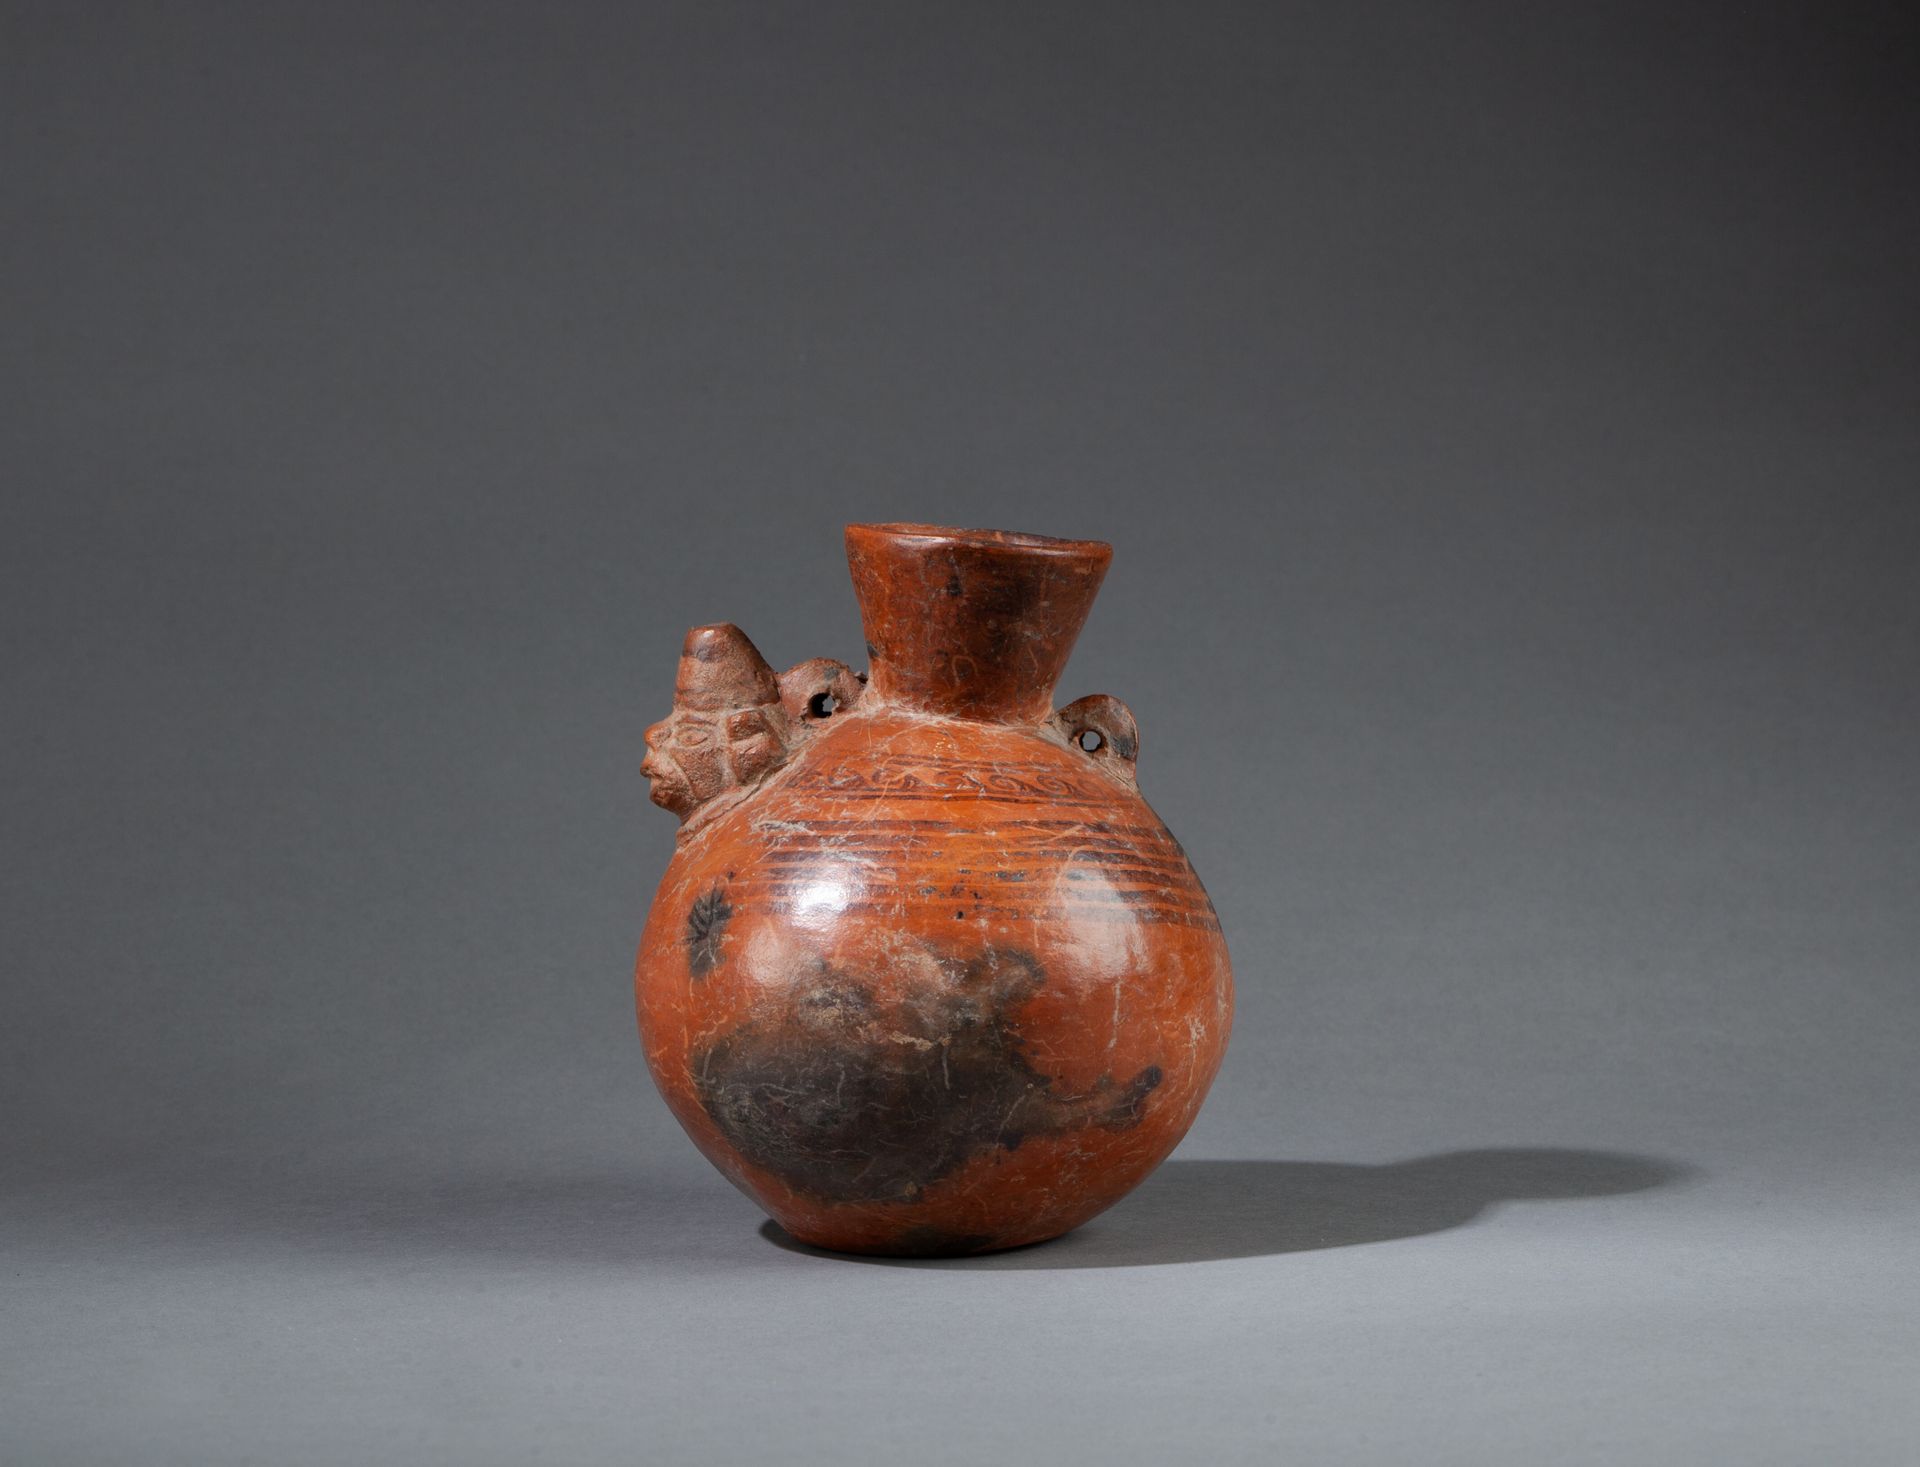 Vase à col en forme d’entonnoir with two small handles. It presents a shaman's h&hellip;